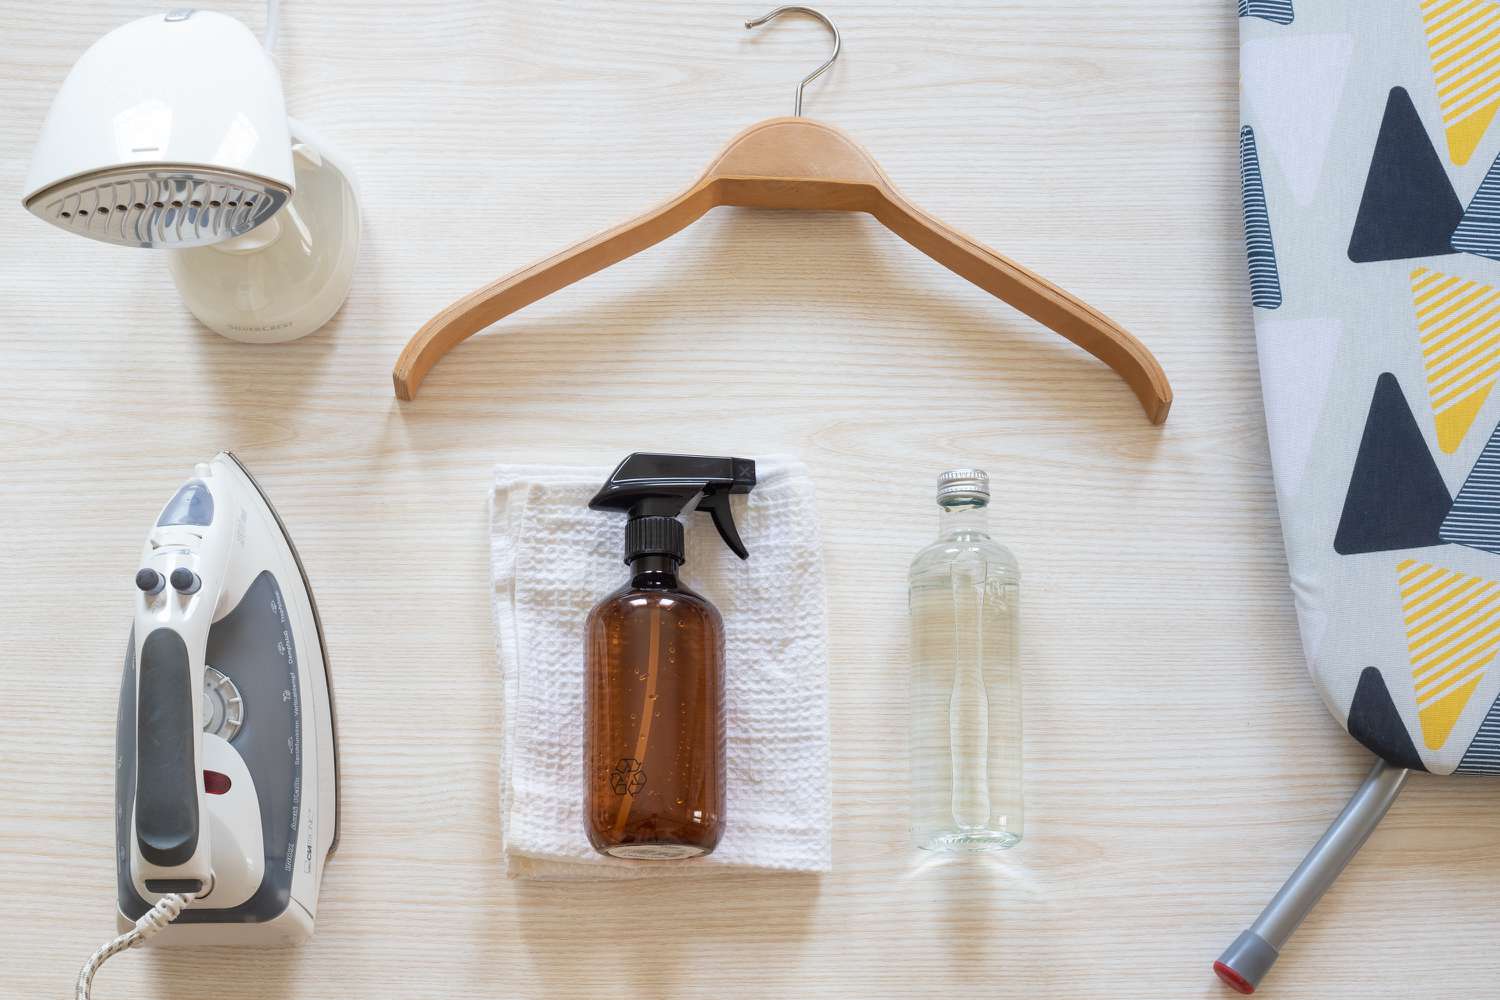 Materialien und Werkzeuge zum Bügeln von ausschließlich chemisch gereinigter Kleidung